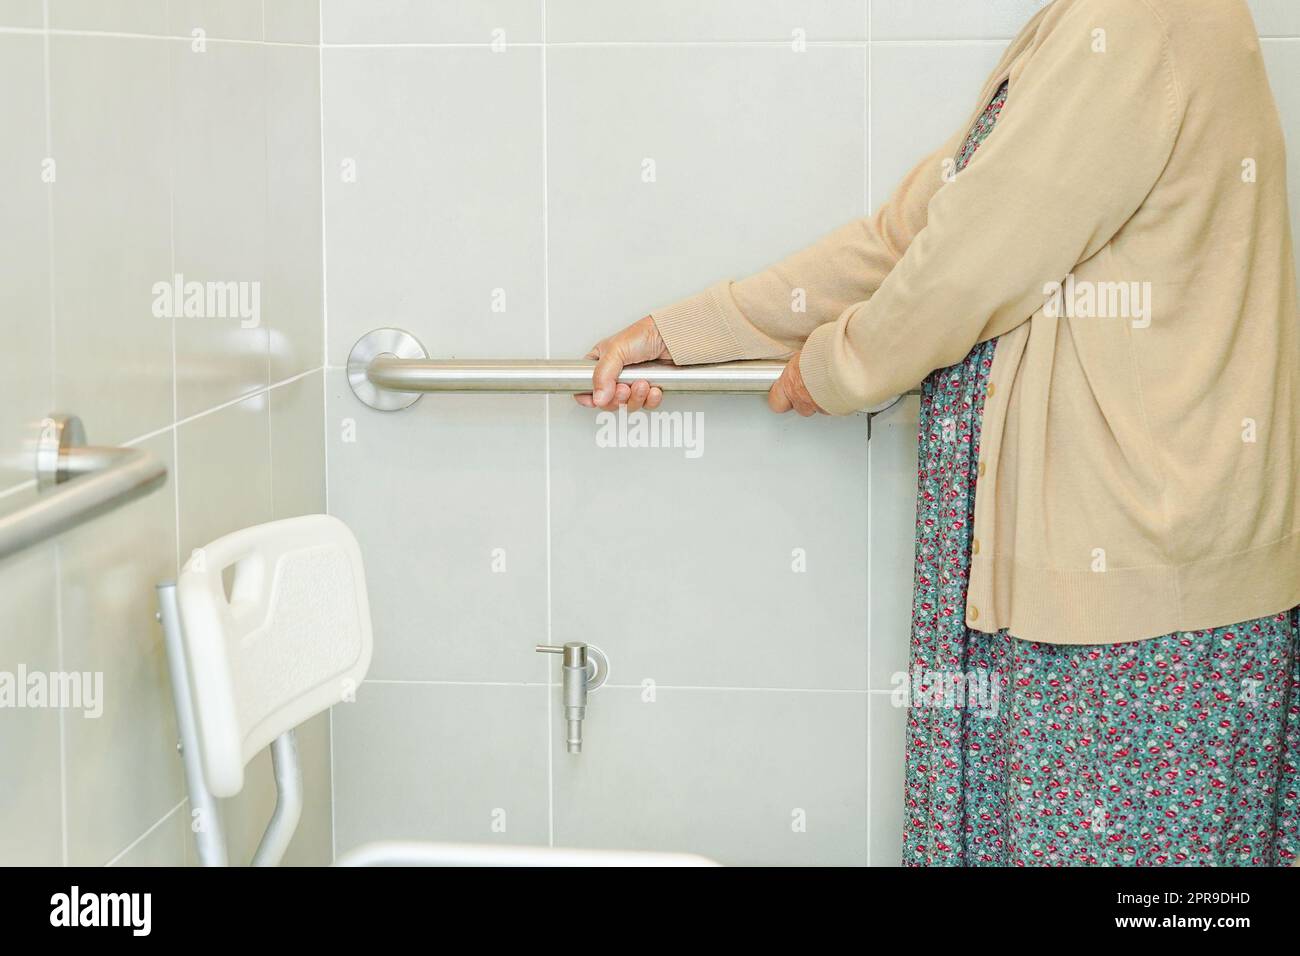 Asiatische ältere alte Frau Patienten verwenden WC-Stützschiene im Badezimmer, Handlauf Sicherheit Haltegriff, Sicherheit im Krankenpflegekrankenhaus. Stockfoto